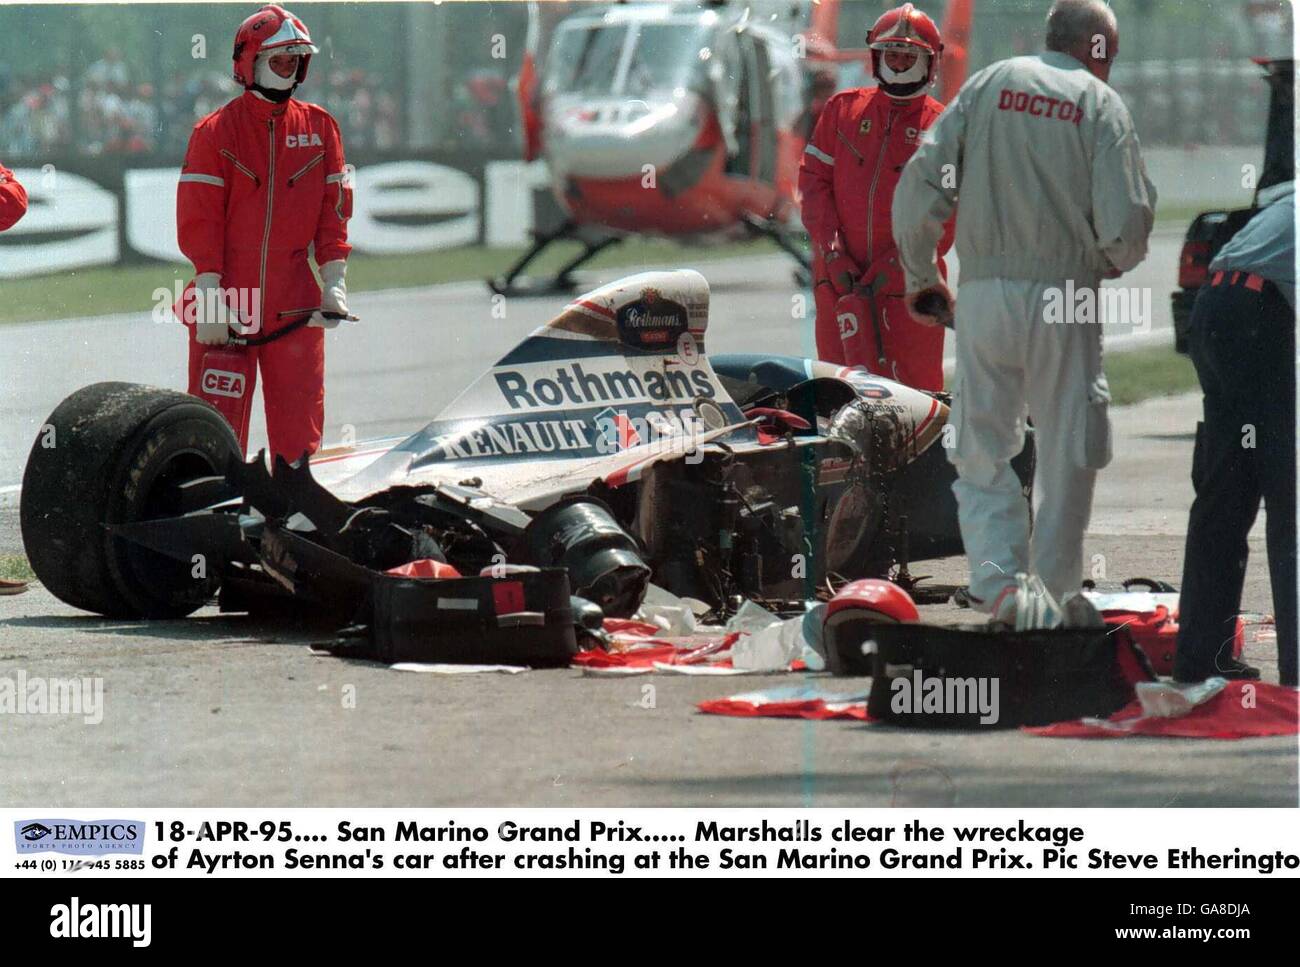 18-APR-94. Großer Preis Von San Marino. Marshalls räumen das Wrack von Ayrton Sennas Auto, nachdem sie beim Großen Preis von San Marino abgestürzt waren Stockfoto